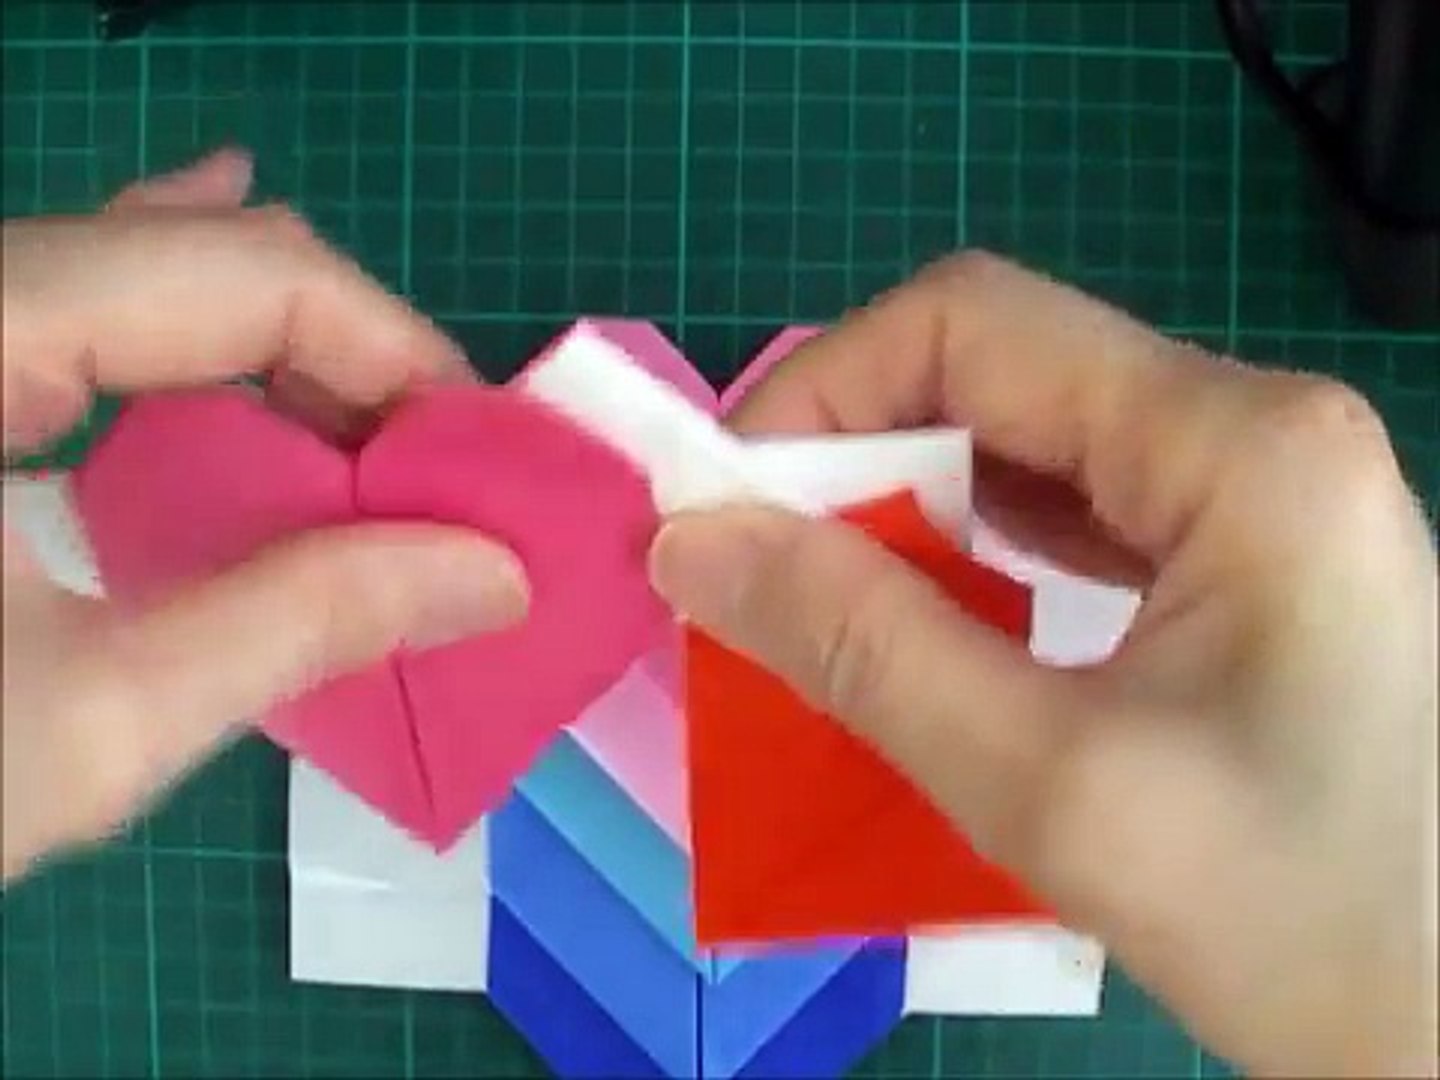 折り紙 ハートのリース 簡単な折り方 Niceno1 Origami Heart Wreath Ccwuraxdc9y Video Dailymotion